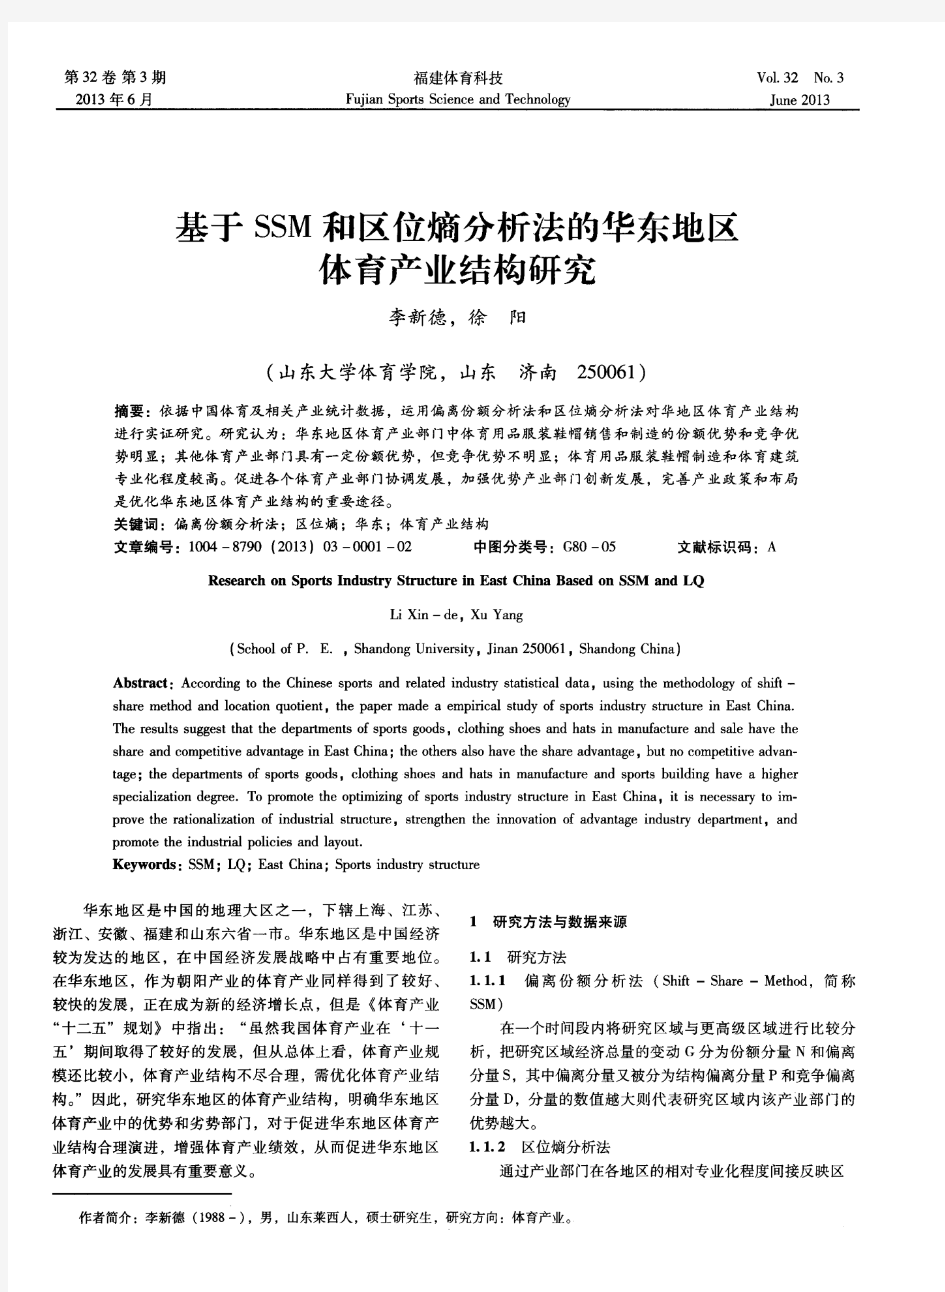 基于SSM和区位熵分析法的华东地区体育产业结构研究